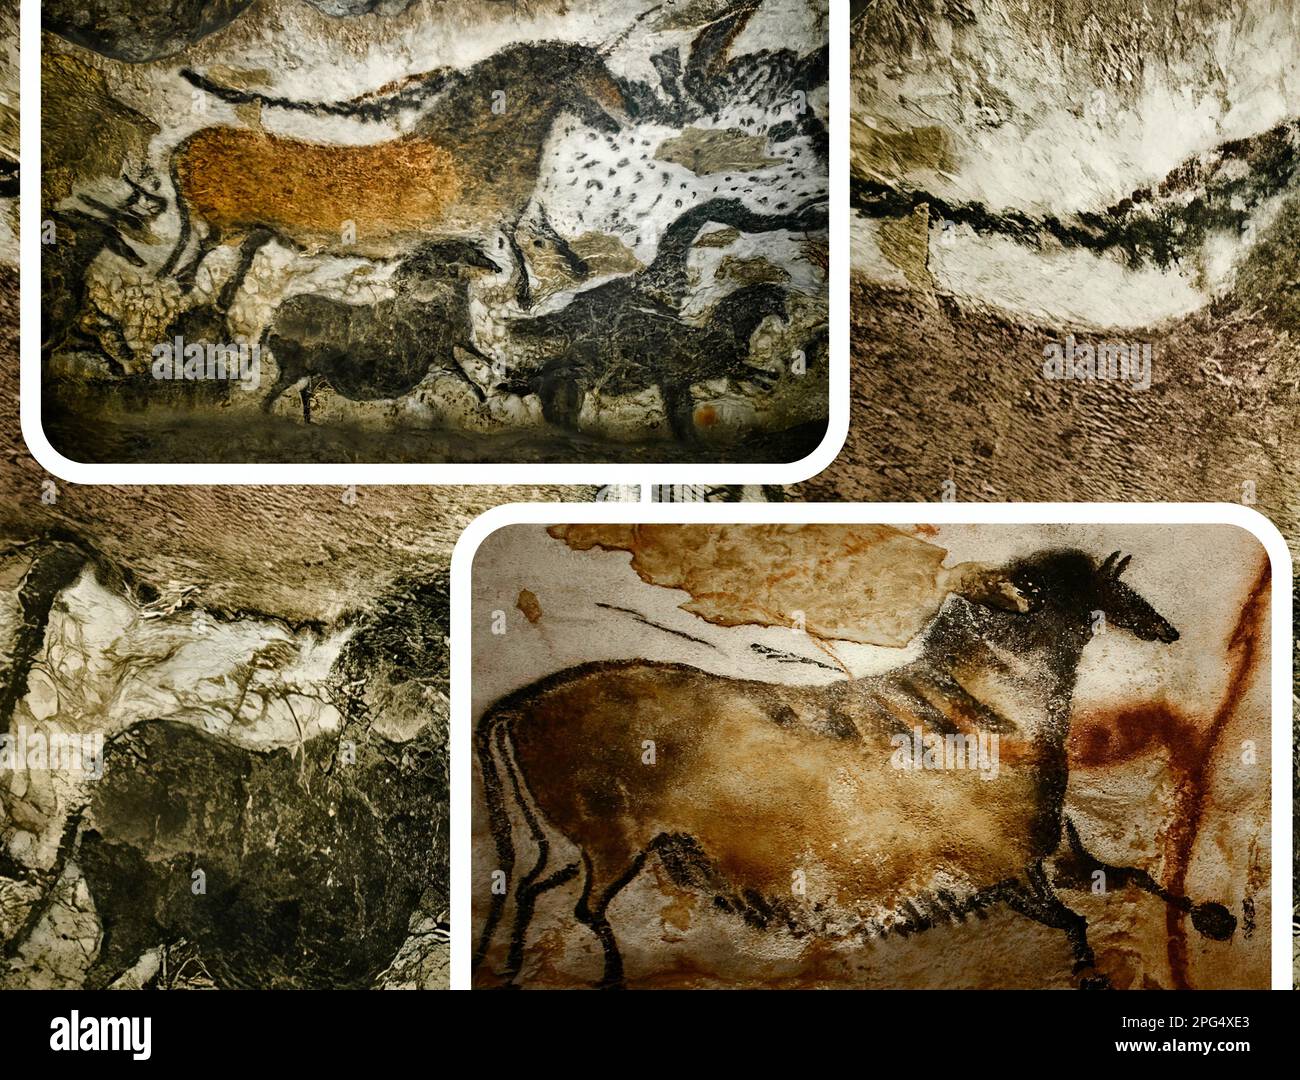 Les grottes de Lascaux sont des grottes décorées de peintures paléolithiques, considérées comme l'un des témoignages les plus importants de l'art préhistorique (UNESCO) Banque D'Images